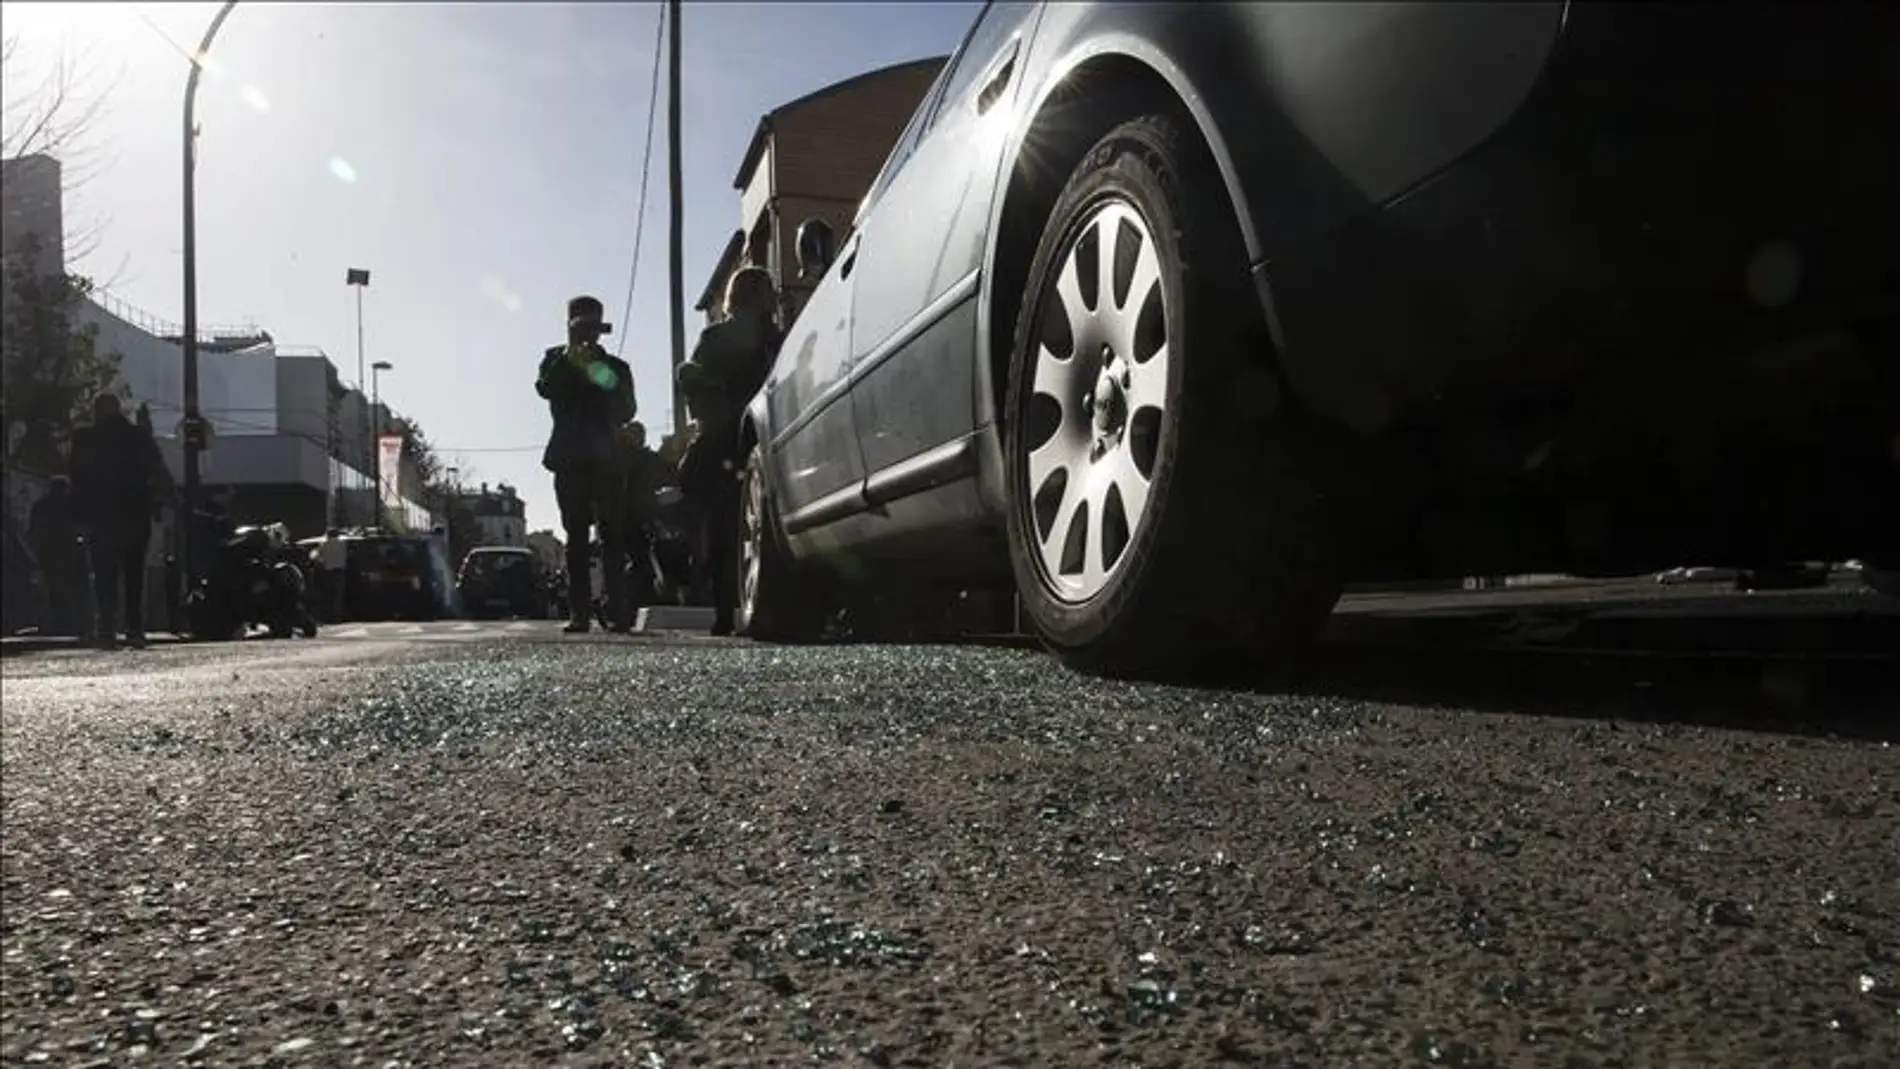 Cristales rotos en el suelo del coche localizado tras los atentados